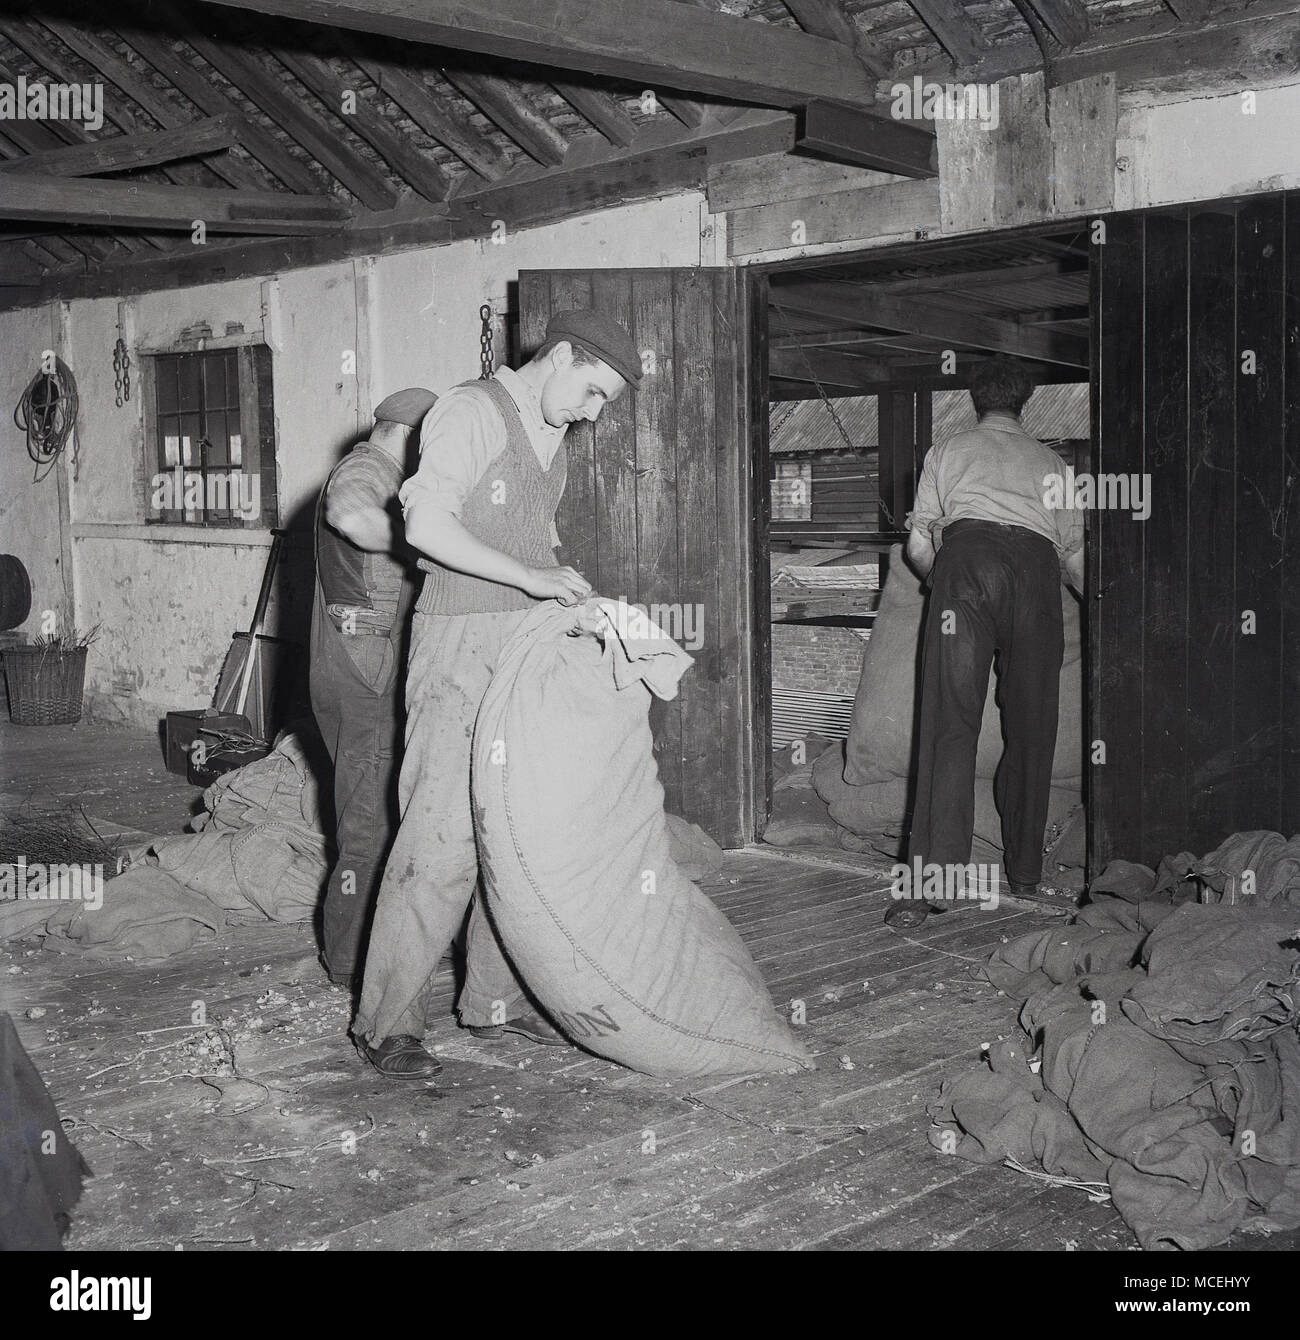 Années 1950, Kent, Angleterre, Royaume-Uni, tableau historique des travailleurs agricoles en mettant l'homme sacs de jute de houblon sur le premier étage d'une maison Oast pour sécher. Banque D'Images